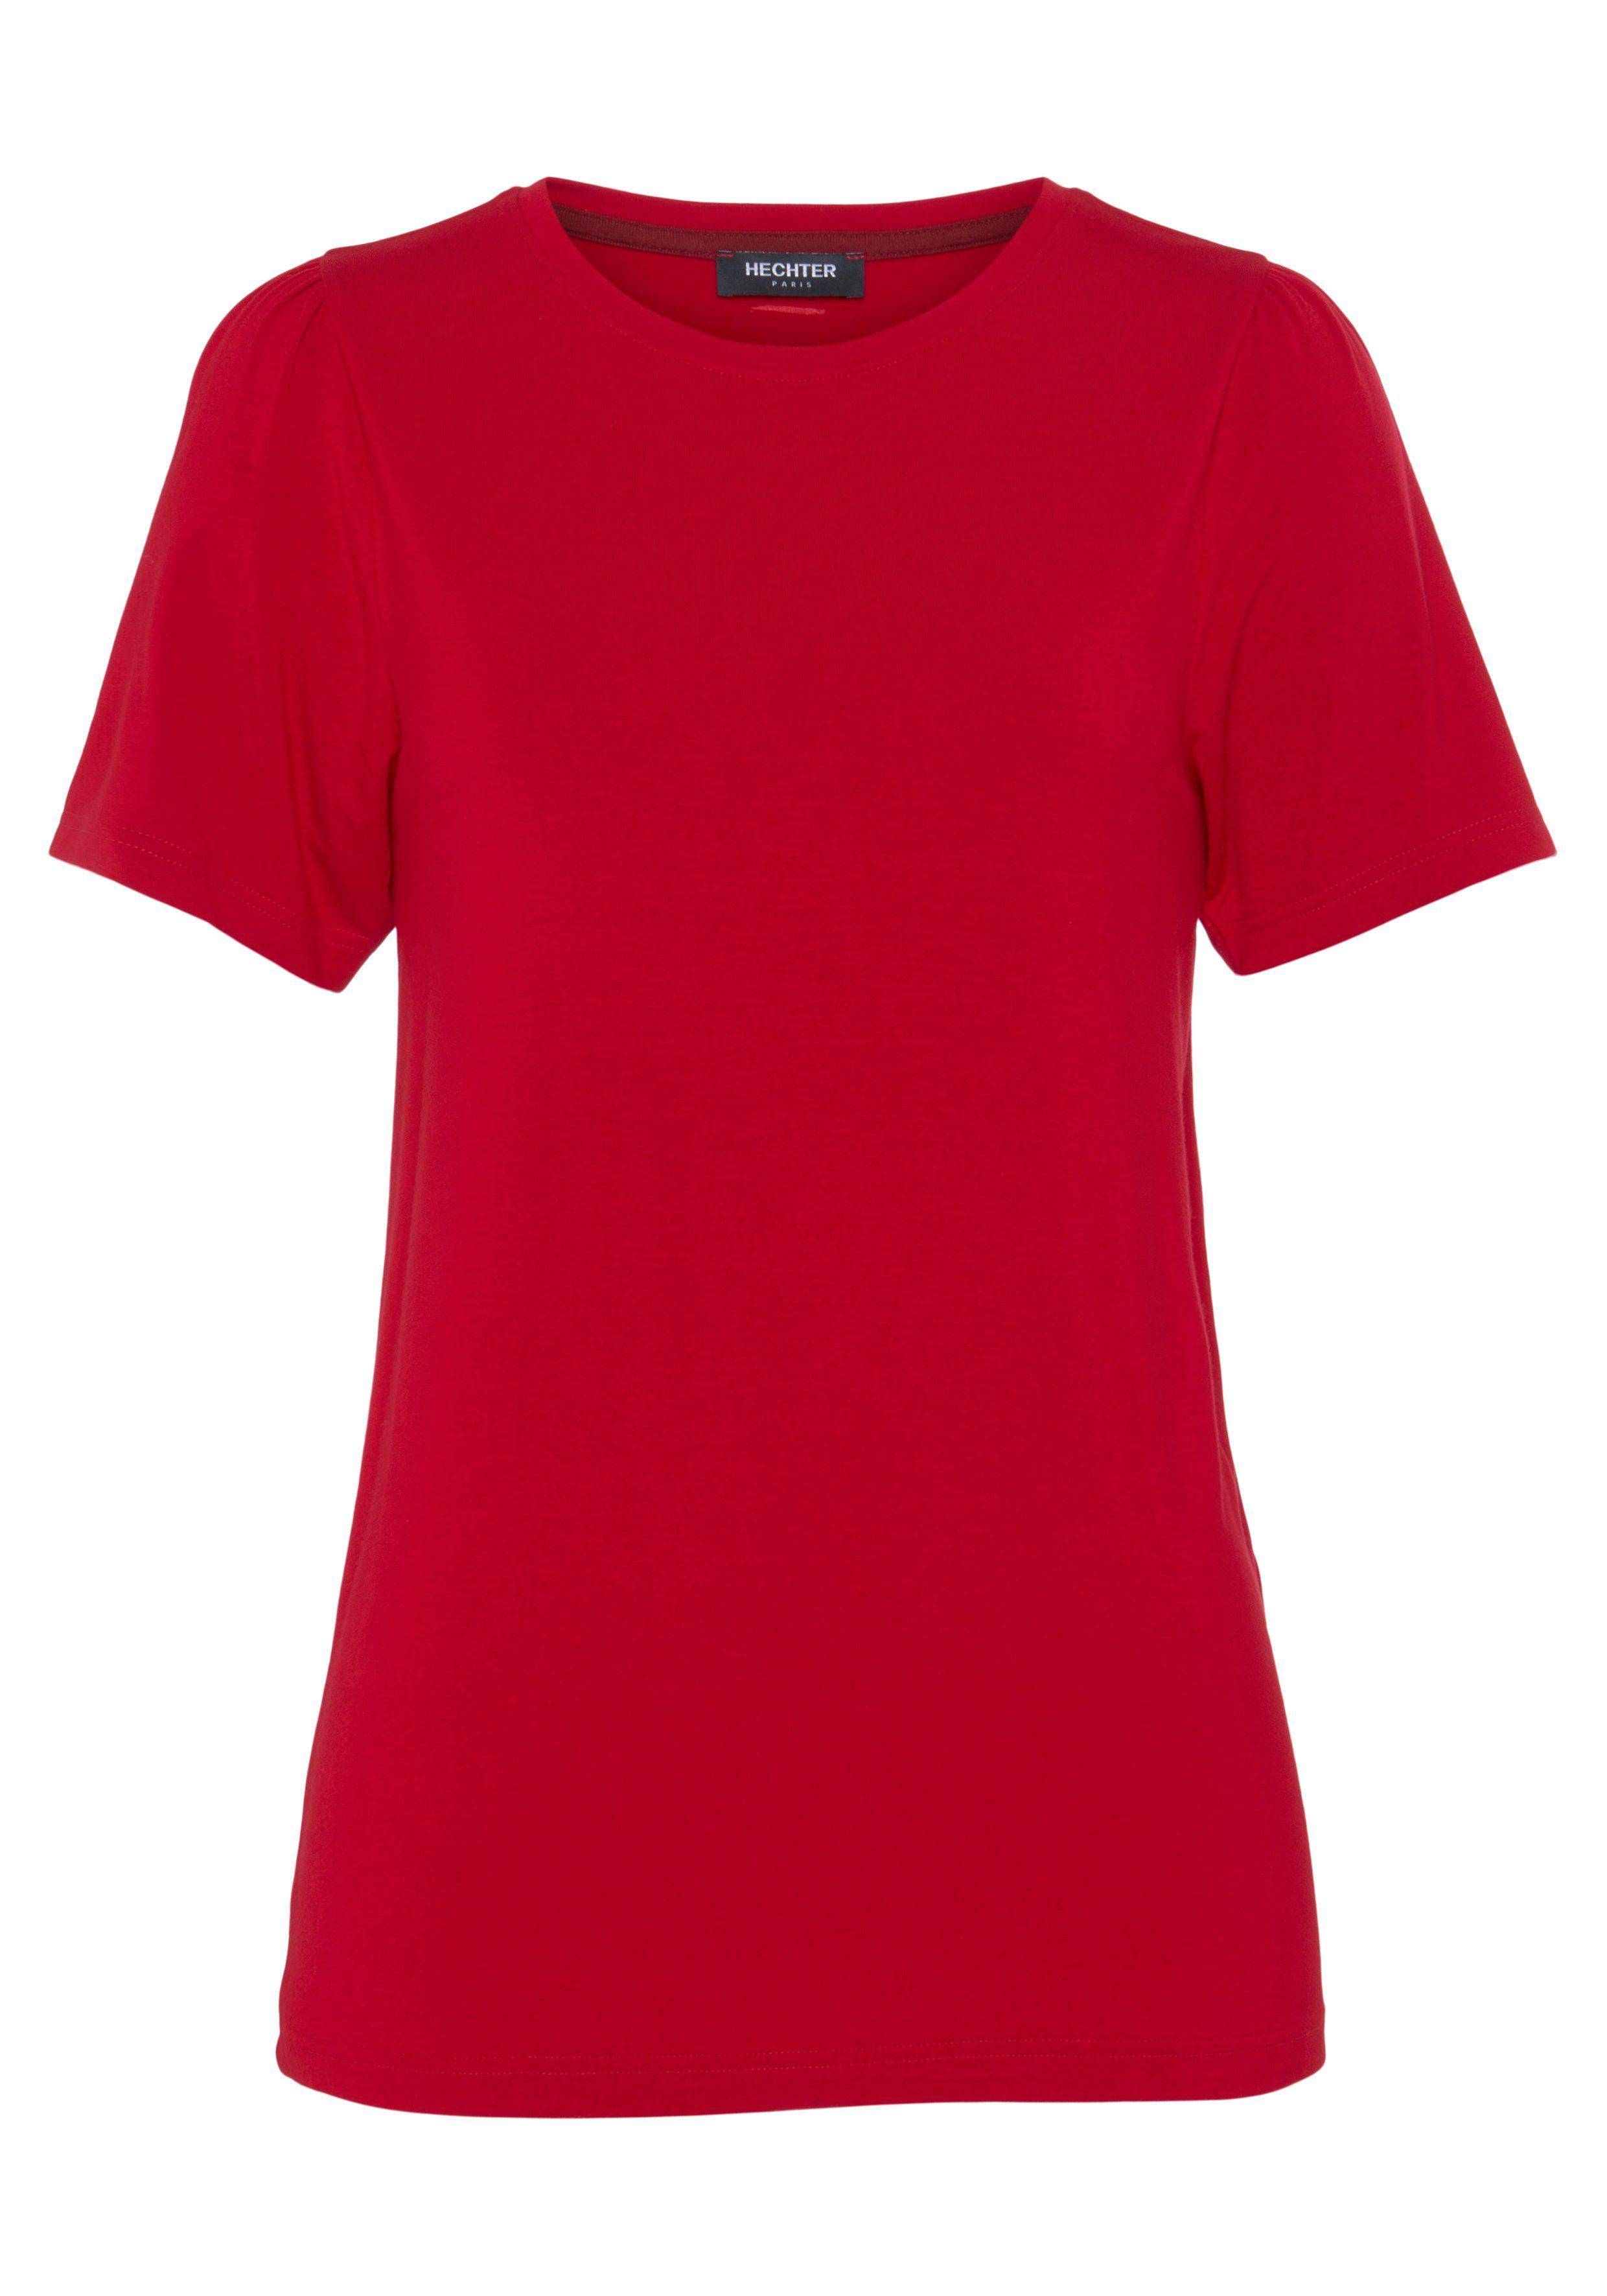 HECHTER PARIS mit T-Shirt rot Puffschultern